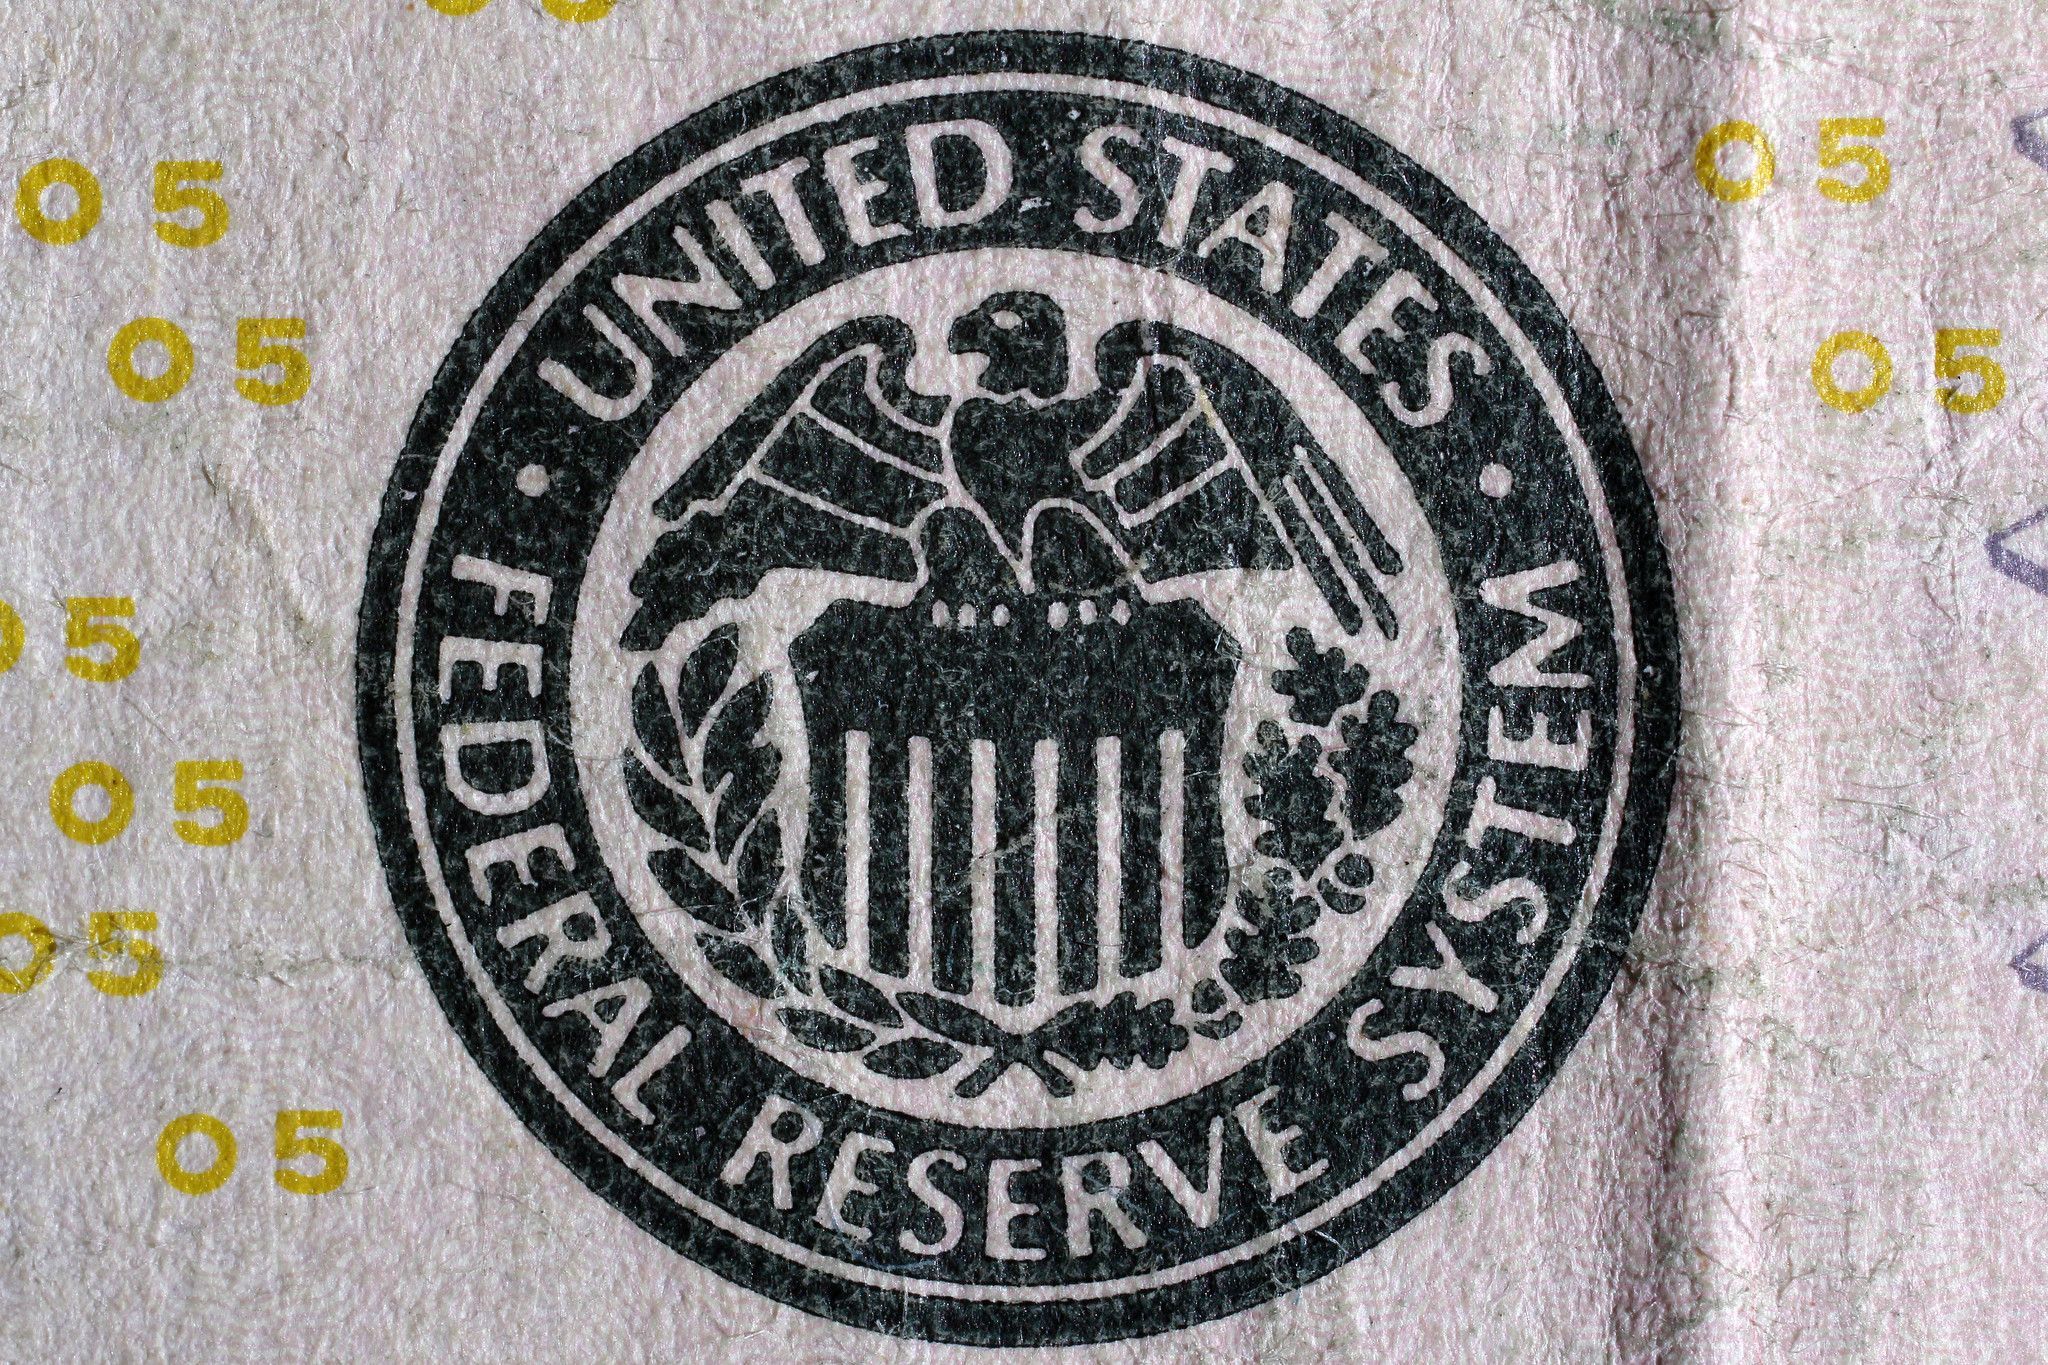 Федеральная резервная система США